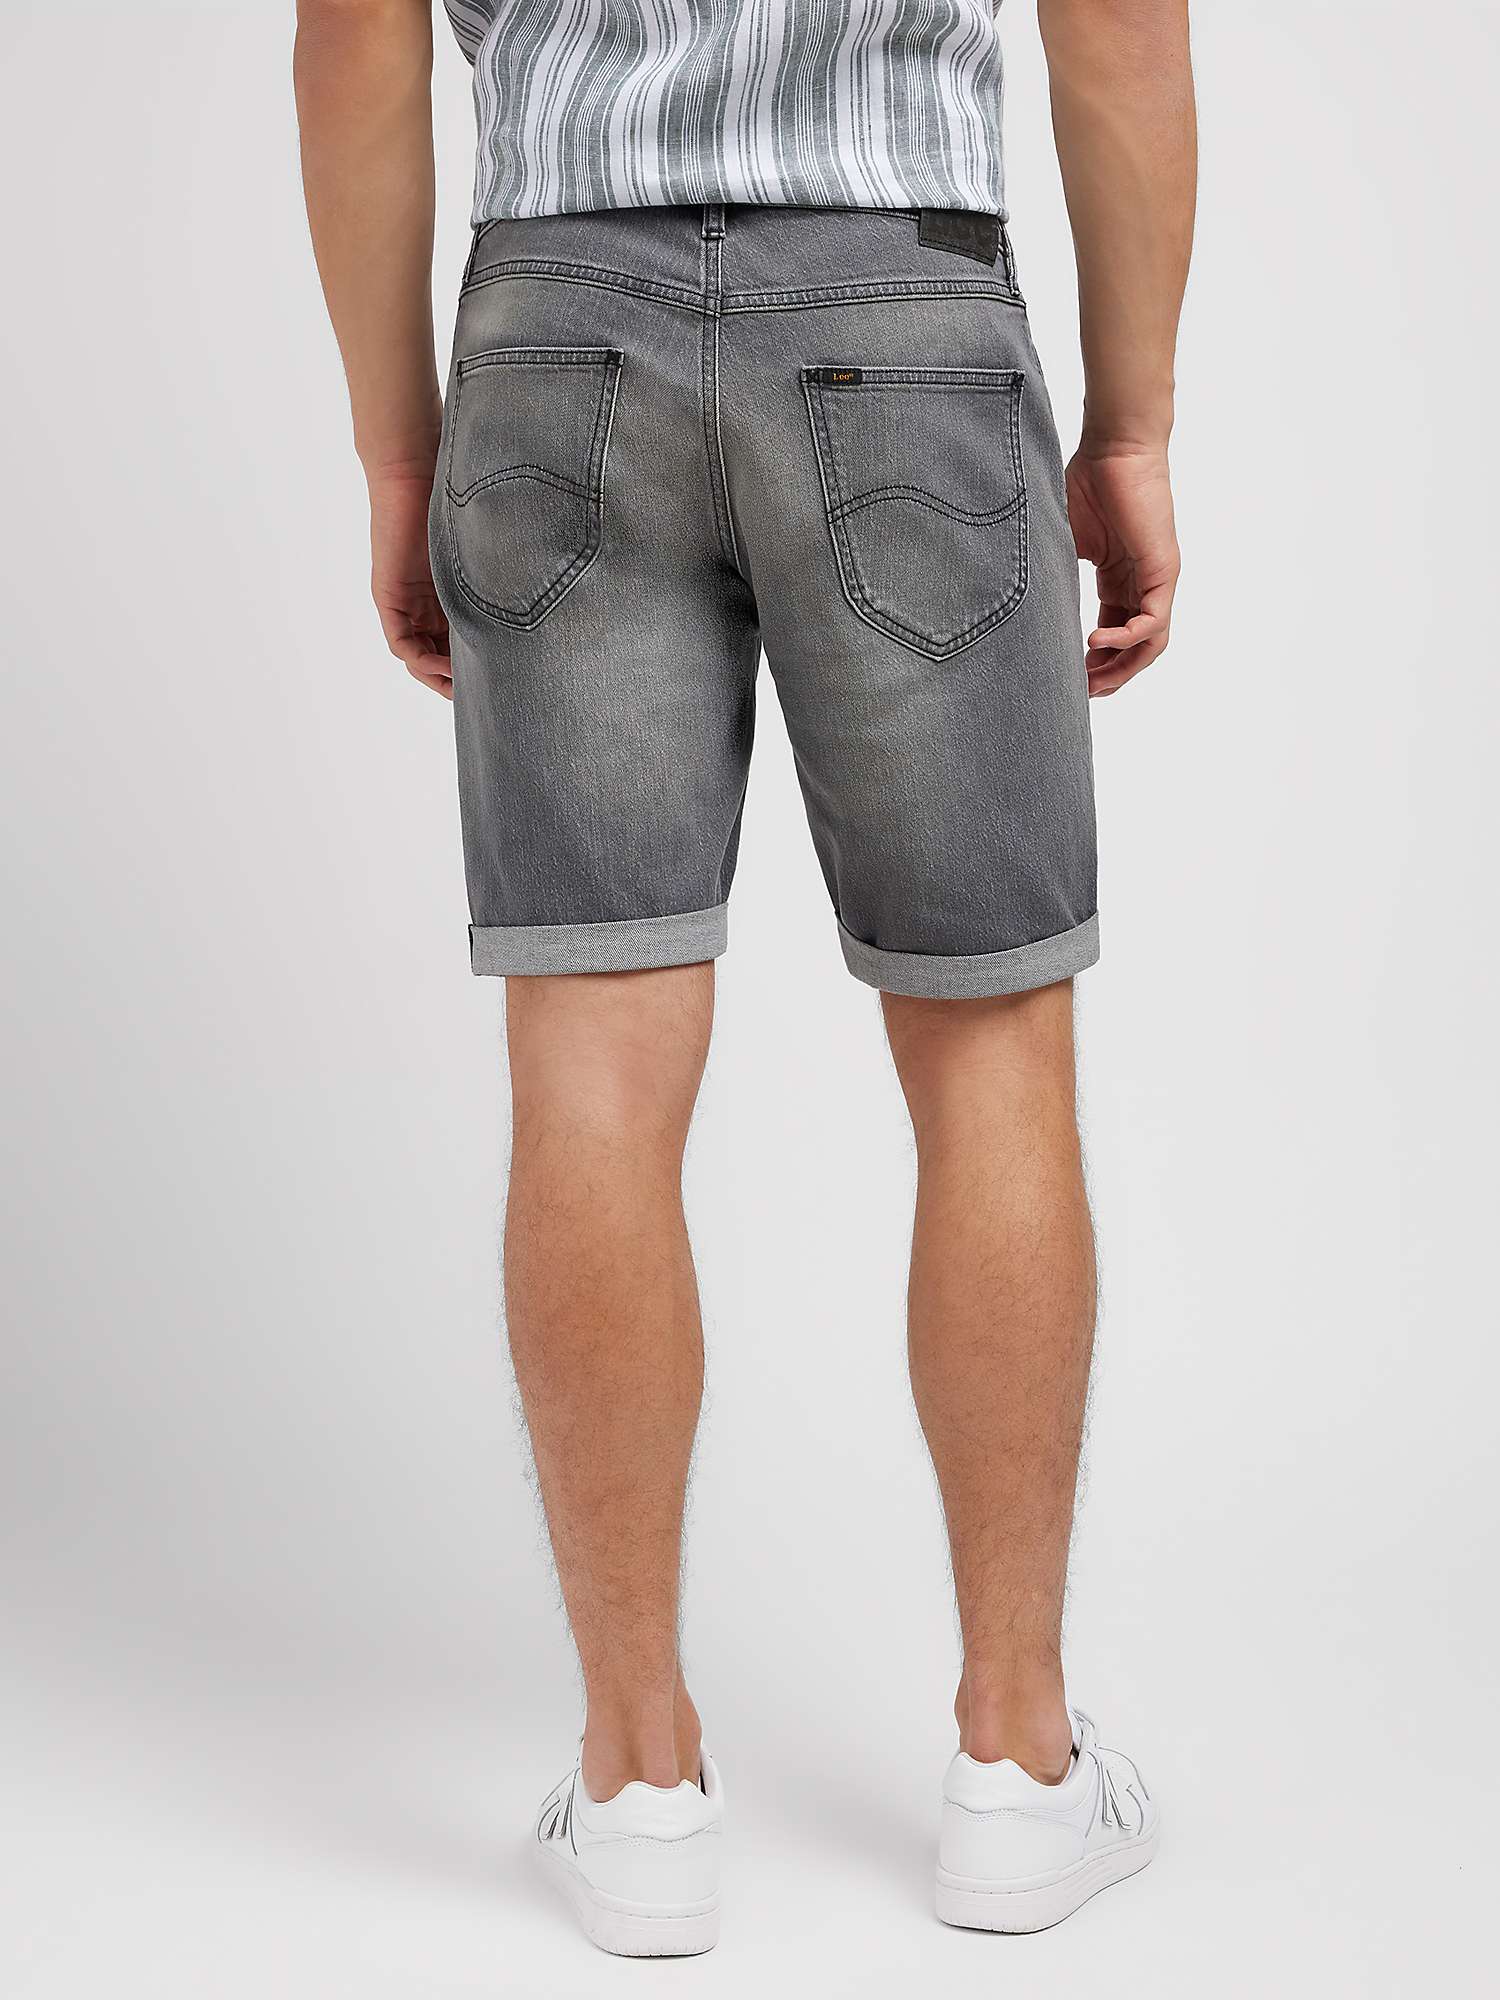 Buy Lee 5 Pocket Denim Shorts, Washed Grey Online at johnlewis.com